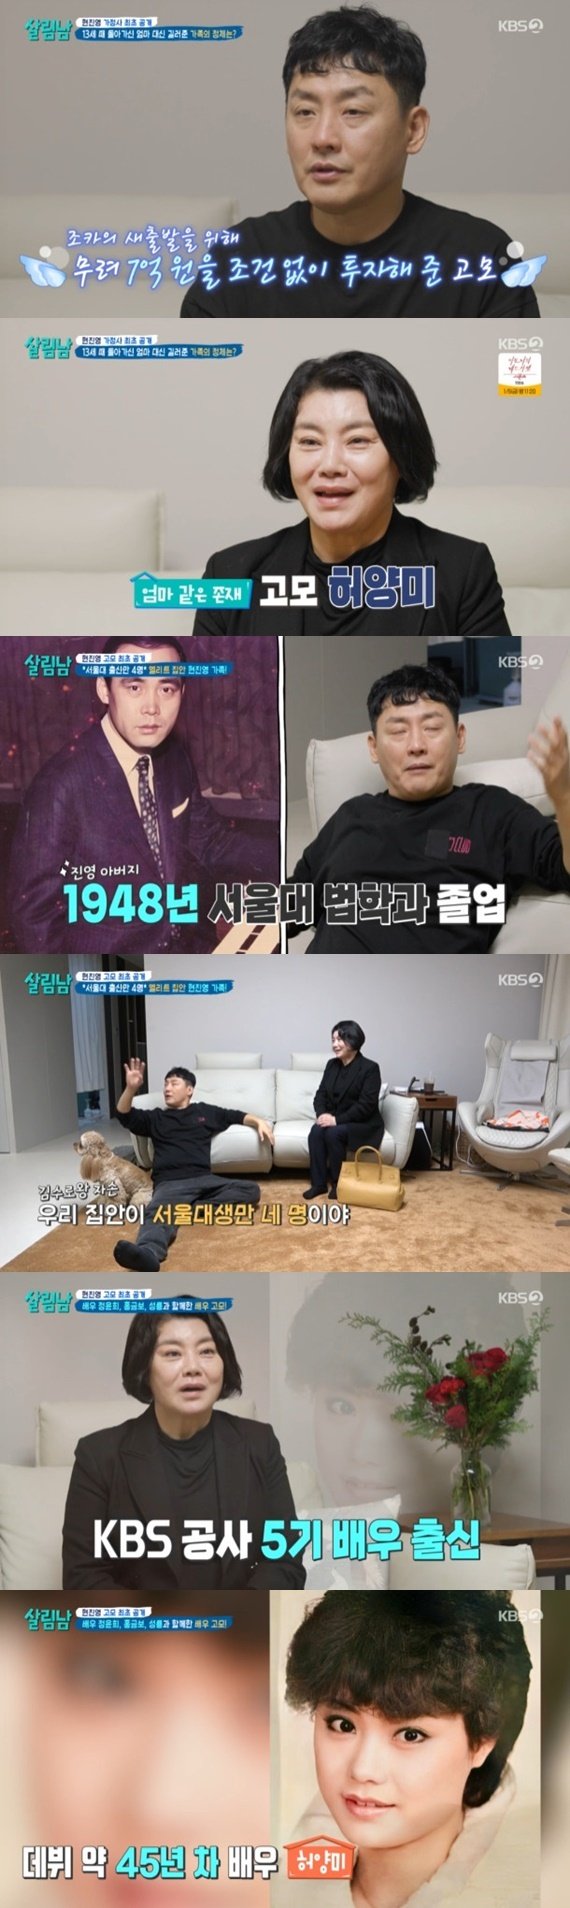 KBS 2TV '살림하는 남자들 시즌2' 캡처